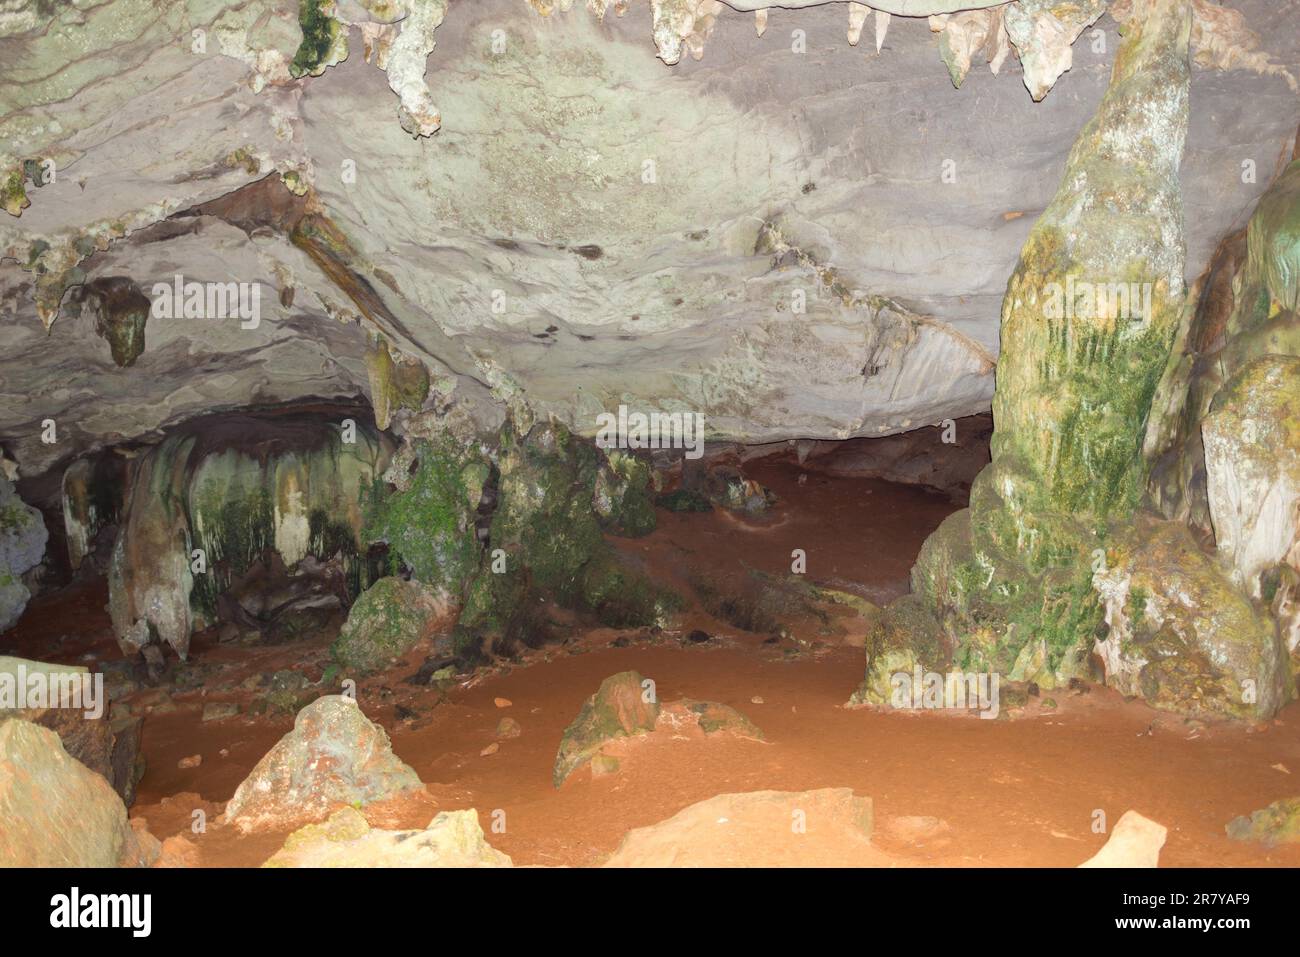 All'interno della grotta dei serpenti Tam Ngu nel parco nazionale di Khao Sok. Ci sono alcuni animali nella grotta come pipistrelli, serpenti e ragni Foto Stock